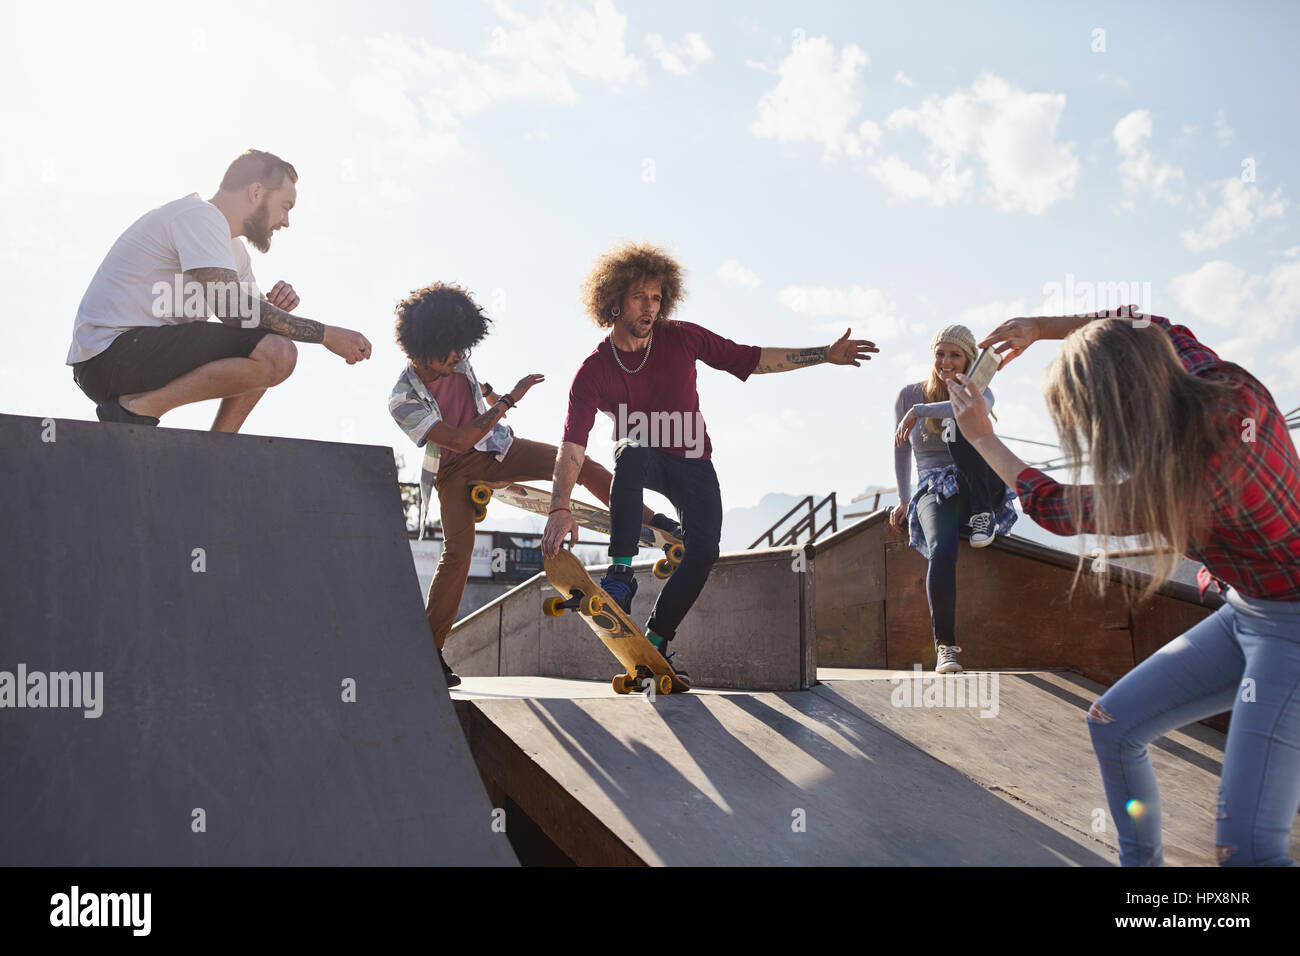 Femme amis masculins photographiant le skate sur la rampe de skate park Banque D'Images